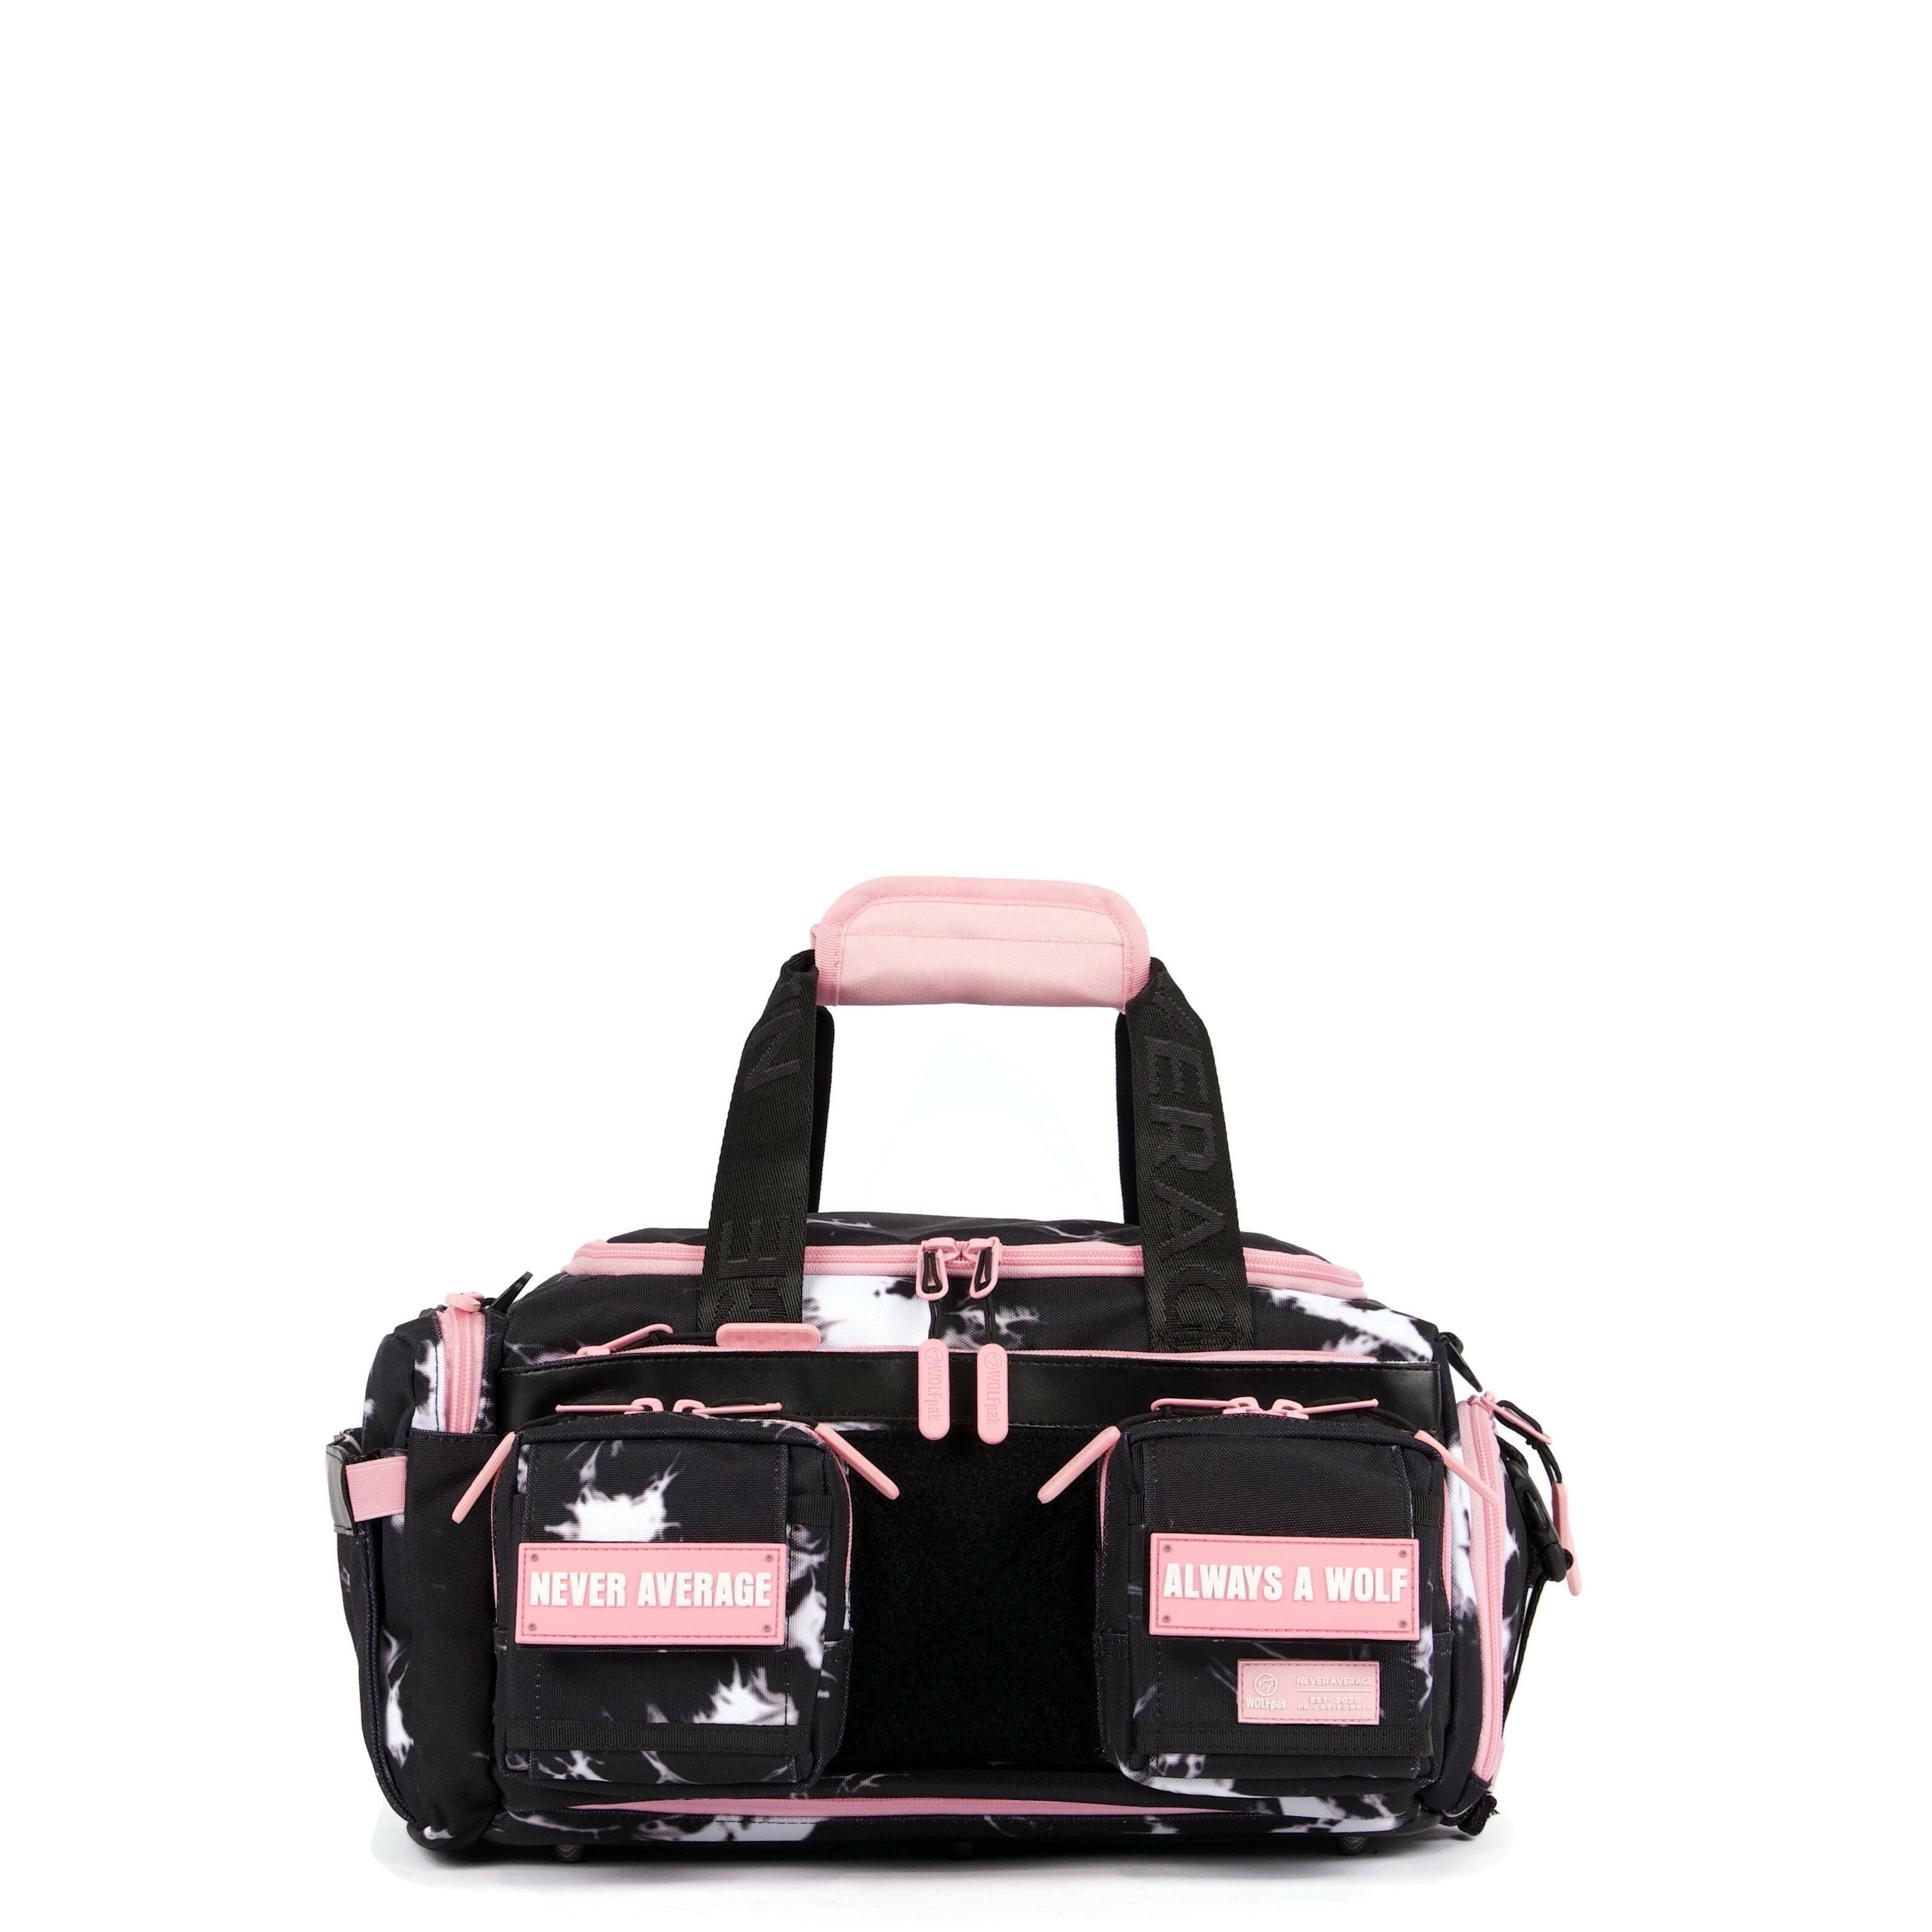 20L Mini Duffle Bag Black Lightning Knockout Pink